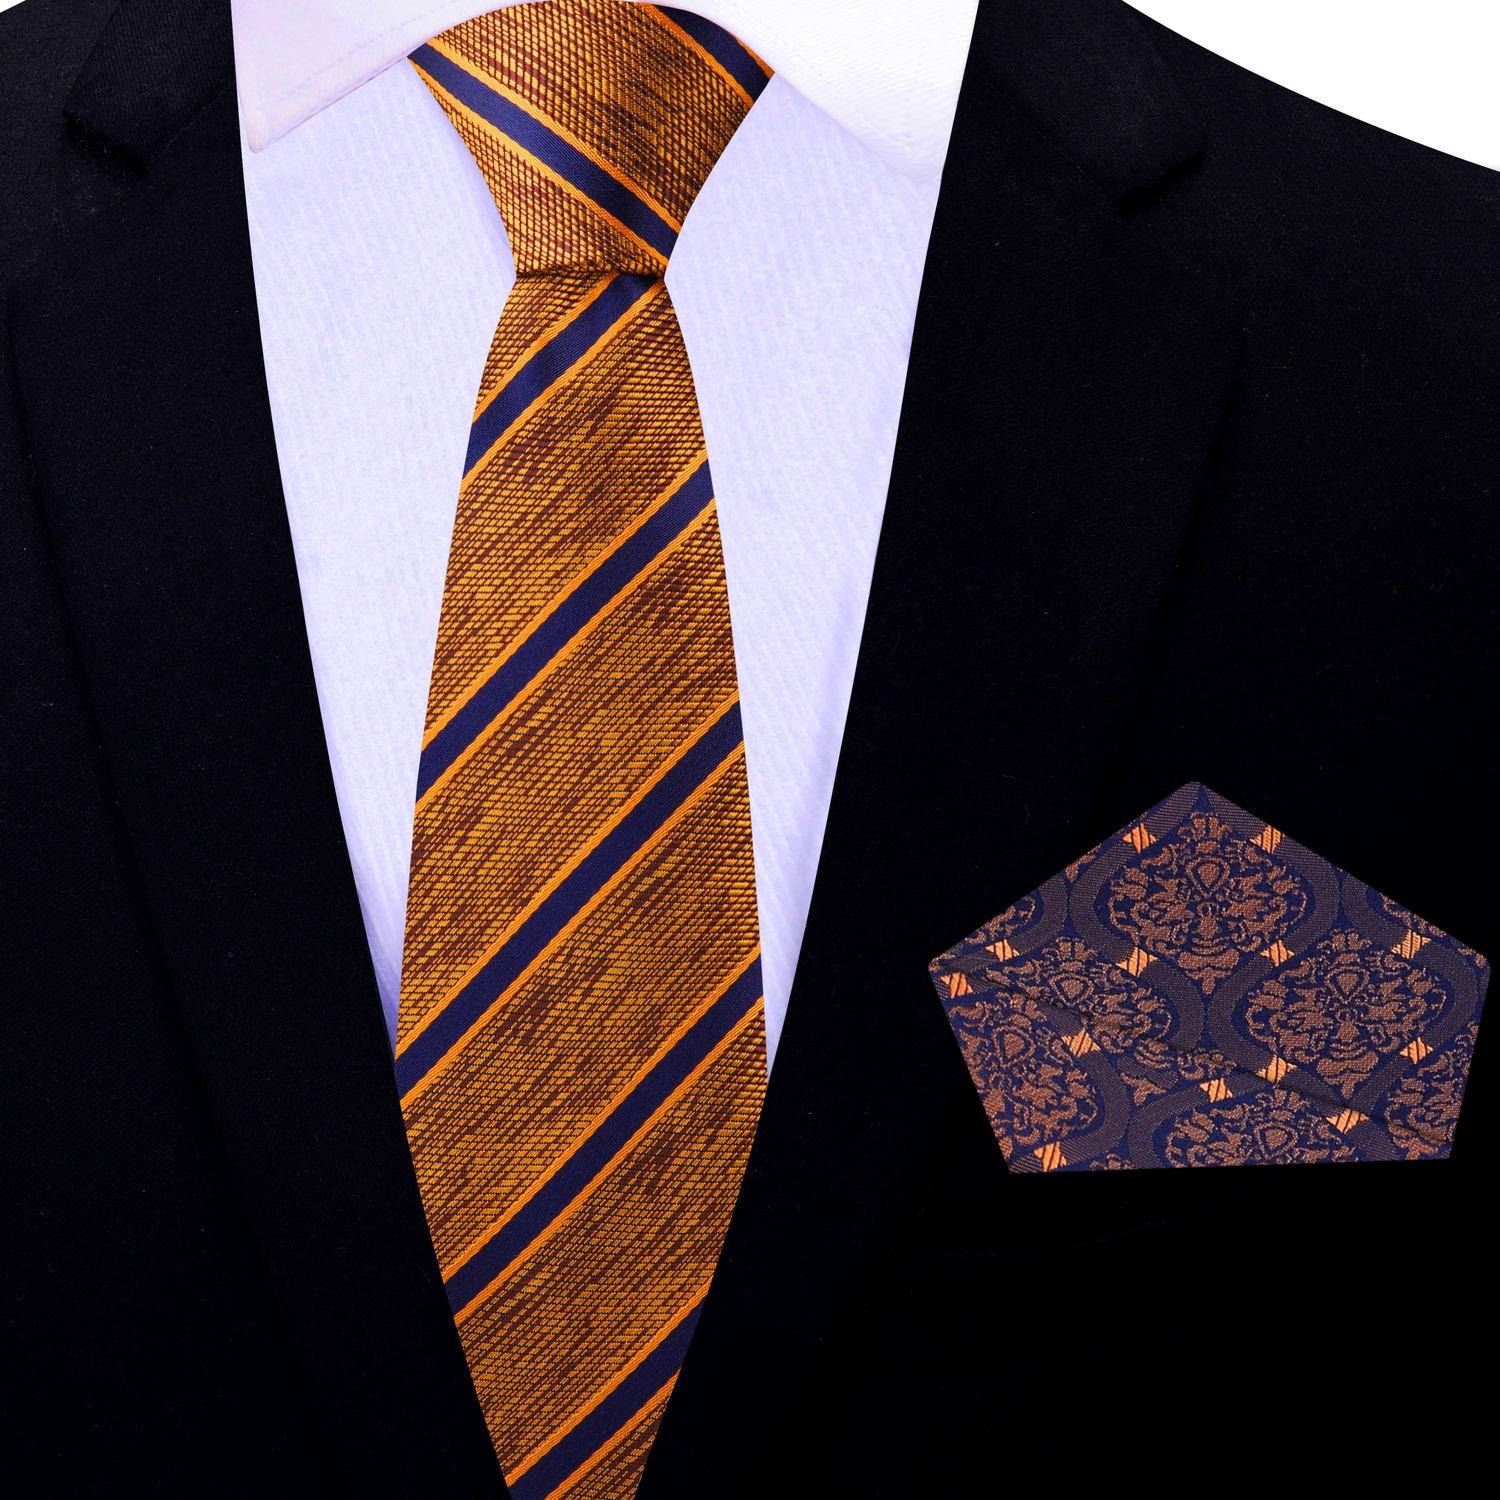 Thin Tie: Orange, Brown, Blue Stripe Necktie with Blue, Orange Abstract Square